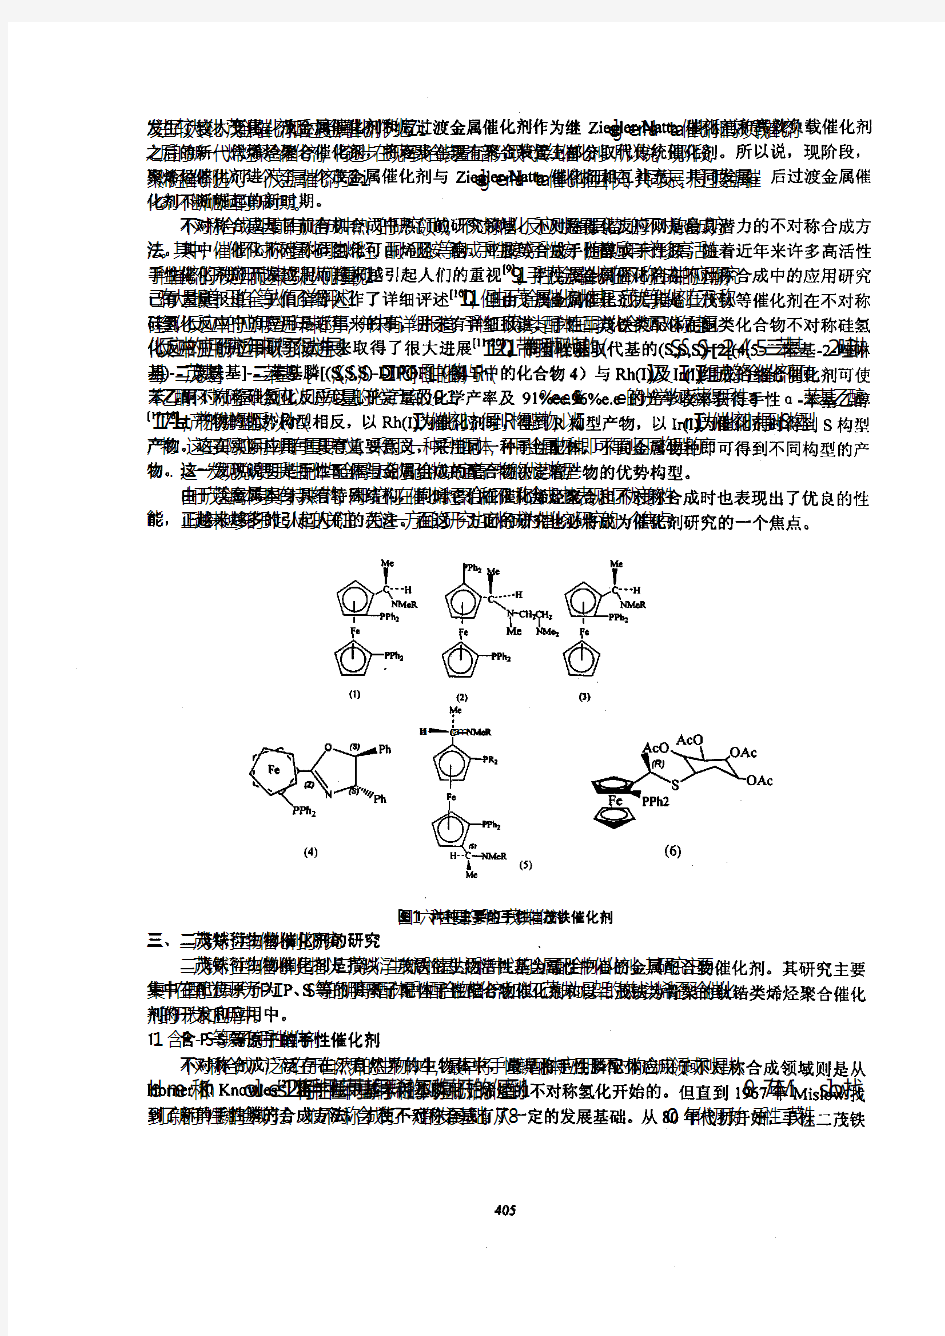 二茂铁衍生物在催化应用中的研究进展